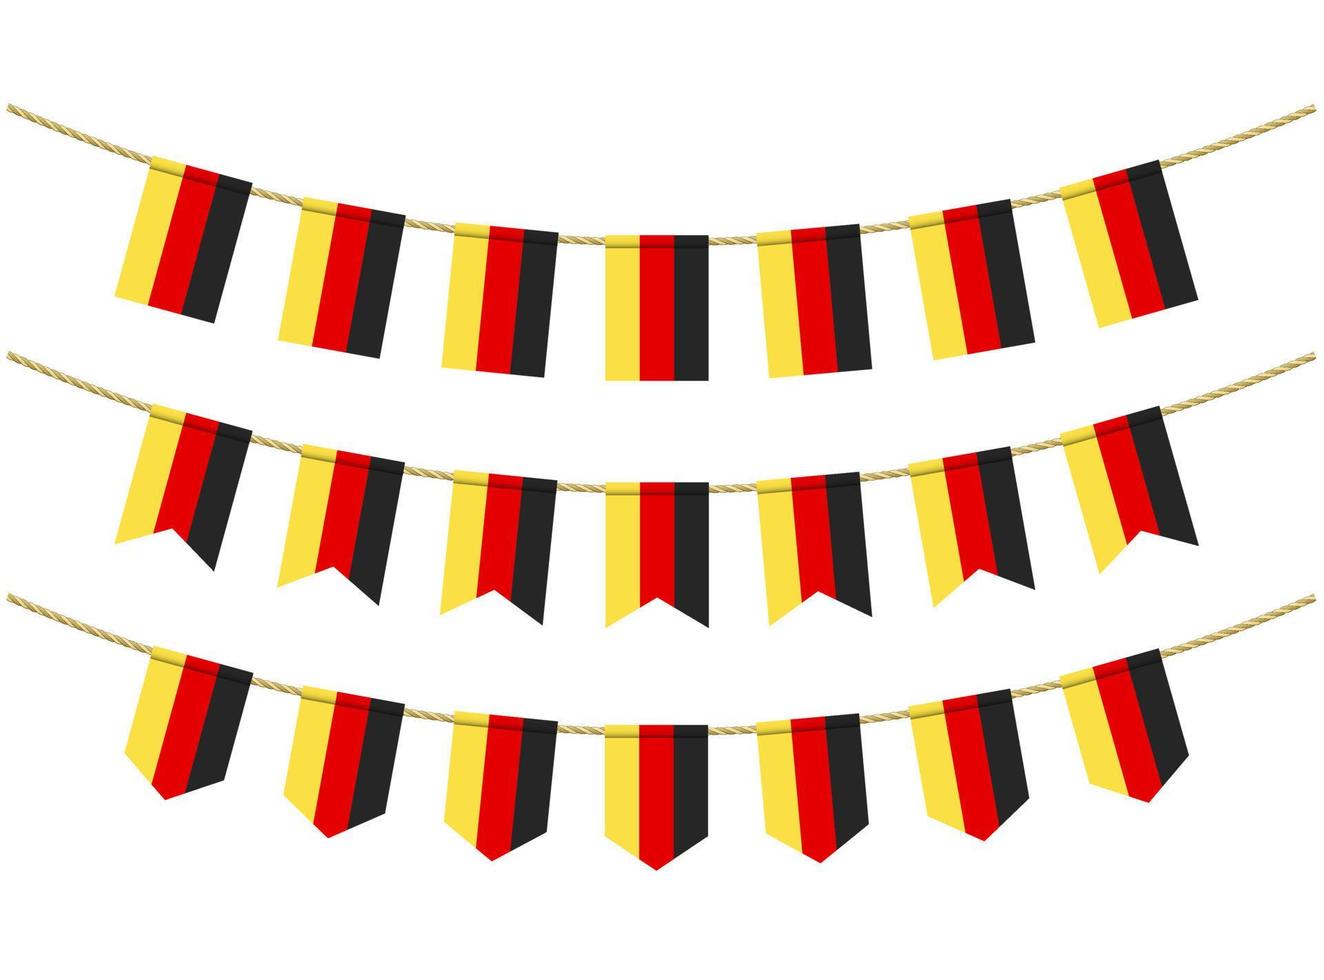 Duitsland vlag aan de touwen op witte achtergrond. set patriottische bunting vlaggen. gors decoratie van de vlag van duitsland vector